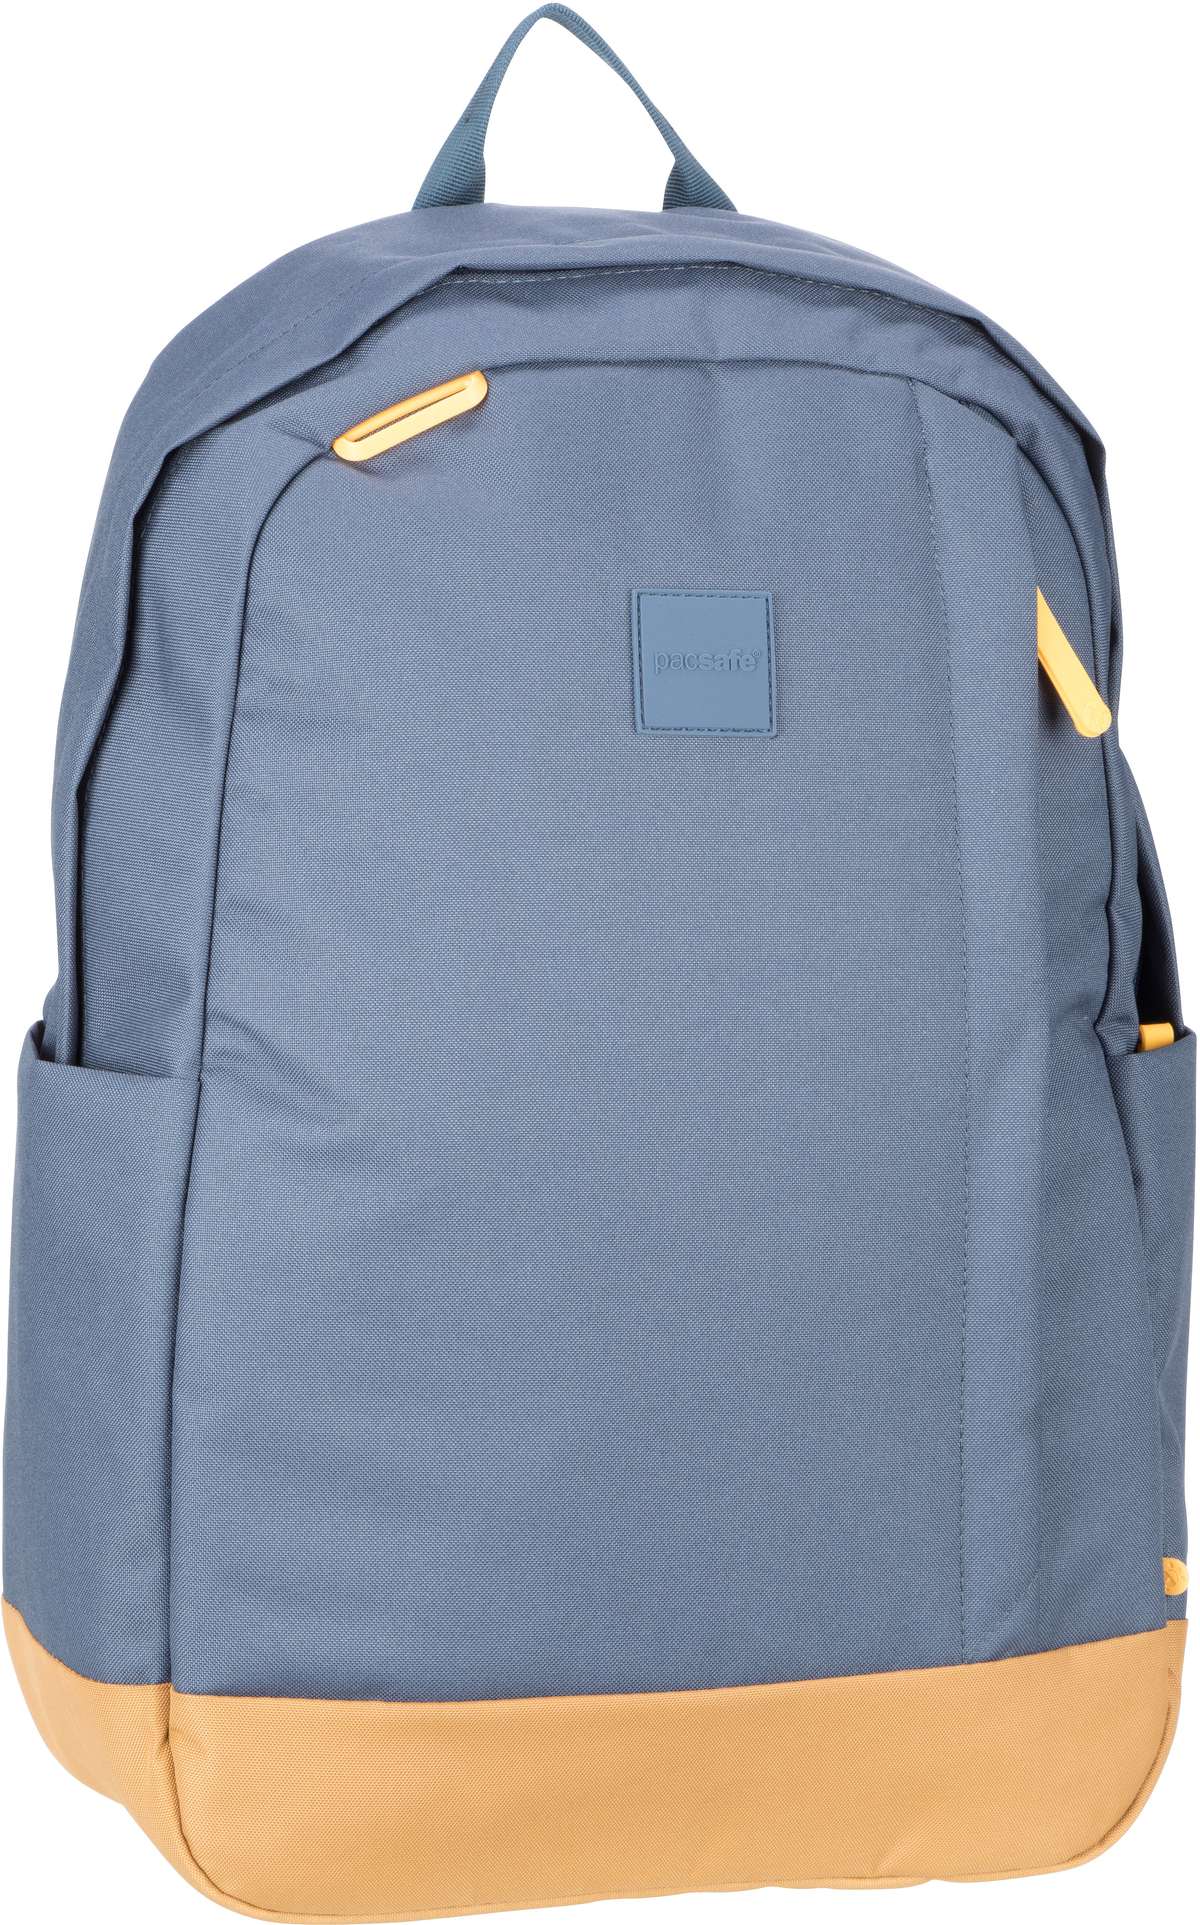 Pacsafe Pacsafe GO 25L Backpack in Blau (25 Liter), Rucksack / Backpack